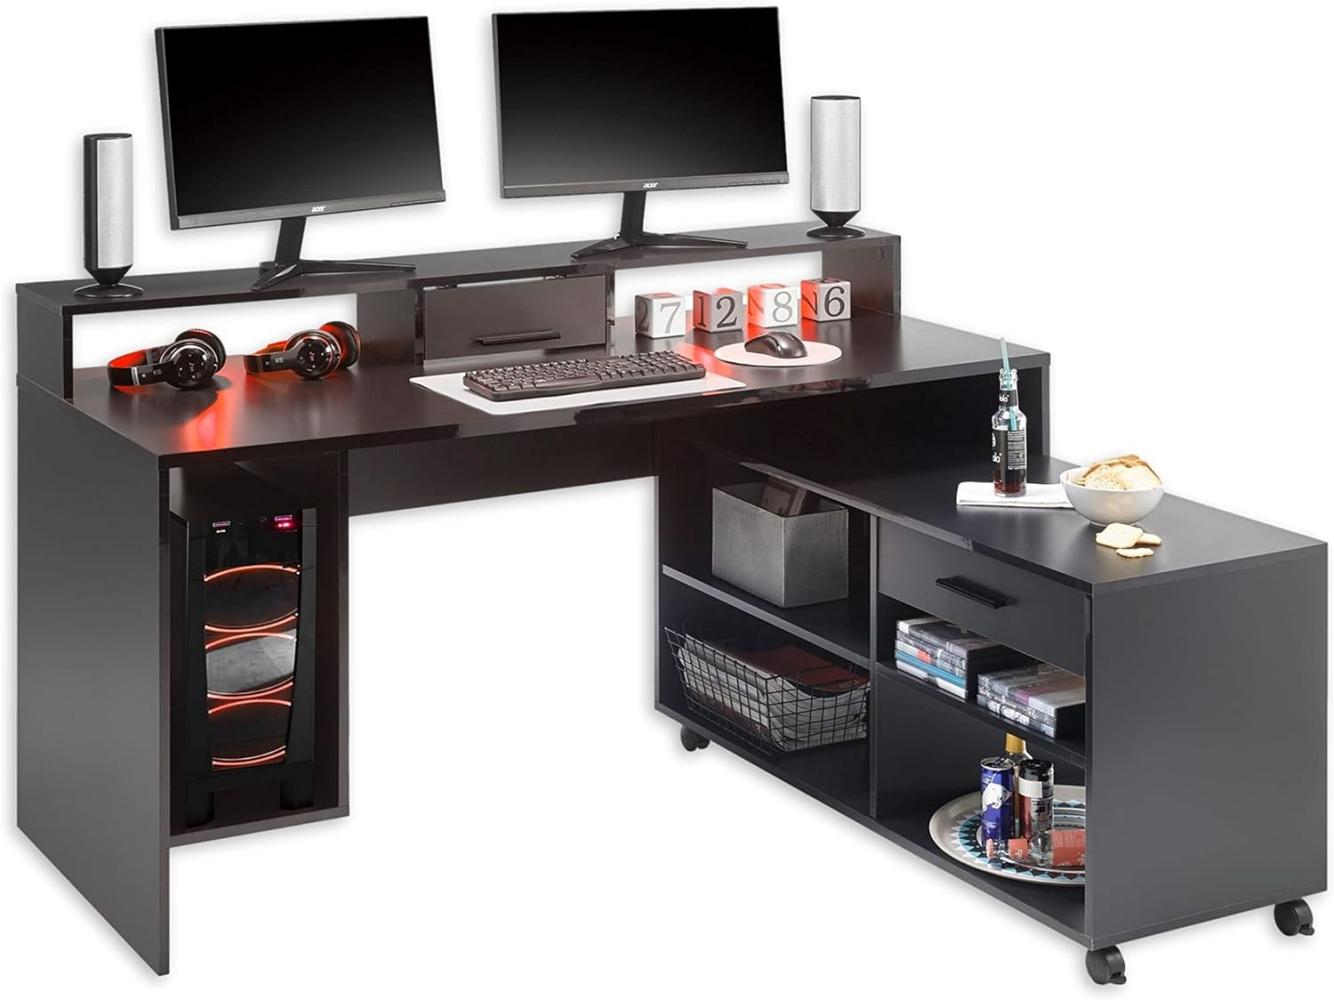 Highscore 3 Gaming Tisch in Schwarz - Gaming Schreibtisch mit Rollcontainer und LED-Beleuchtung - 160 x 92 x 70 cm (B/H/T) Bild 1